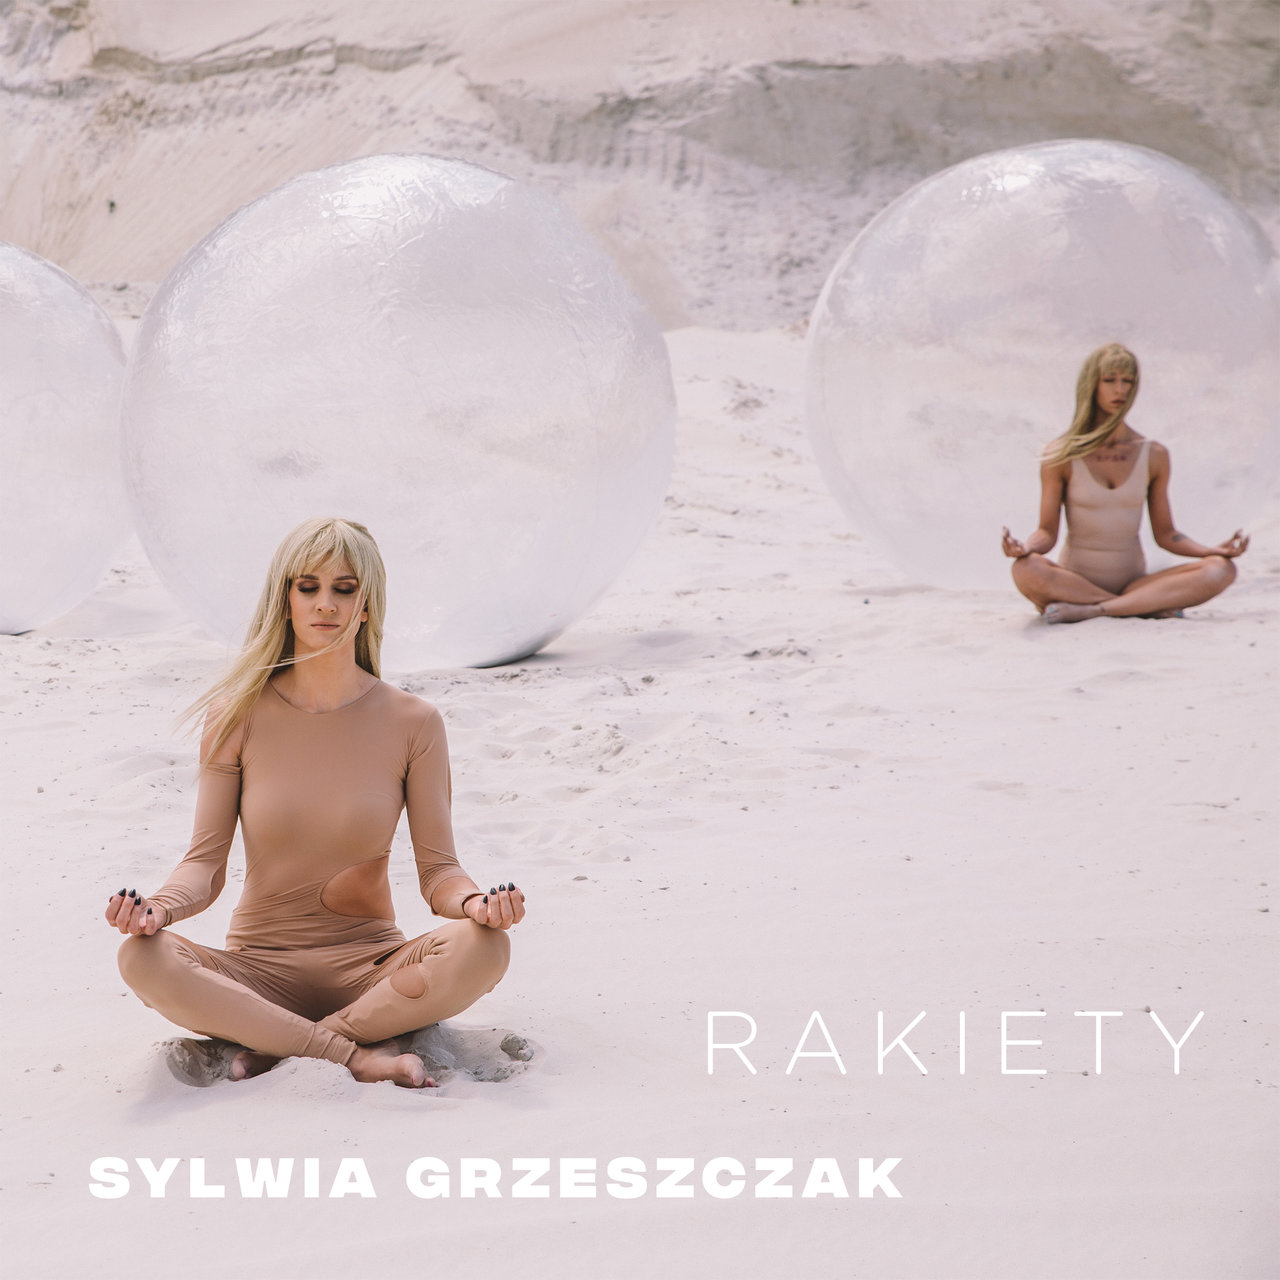 Sylwia Grzeszczak Rakiety cover artwork